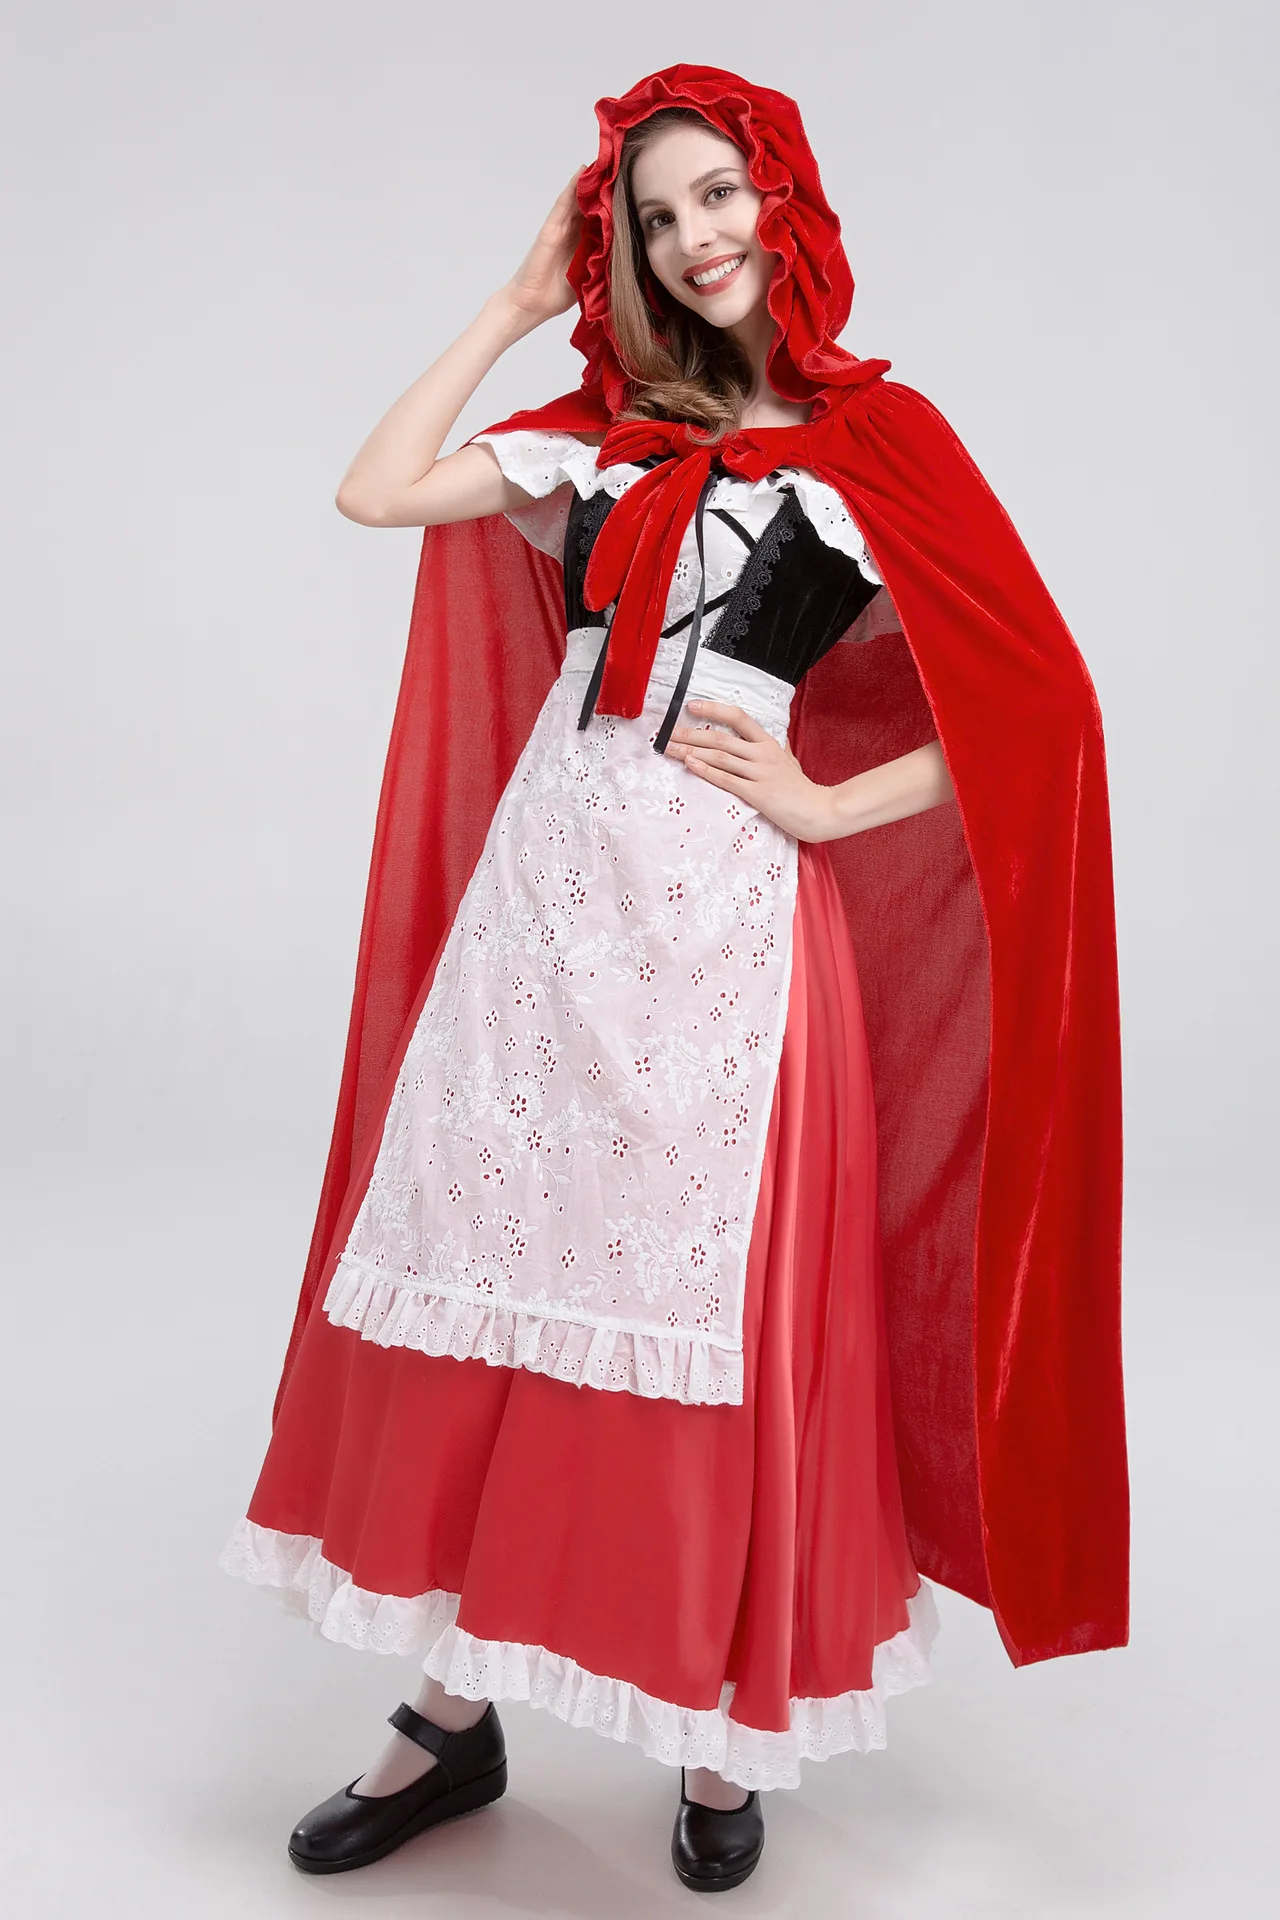 Костюм Красной Шапочки для взрослых Платье косплея вечерние королева ночного